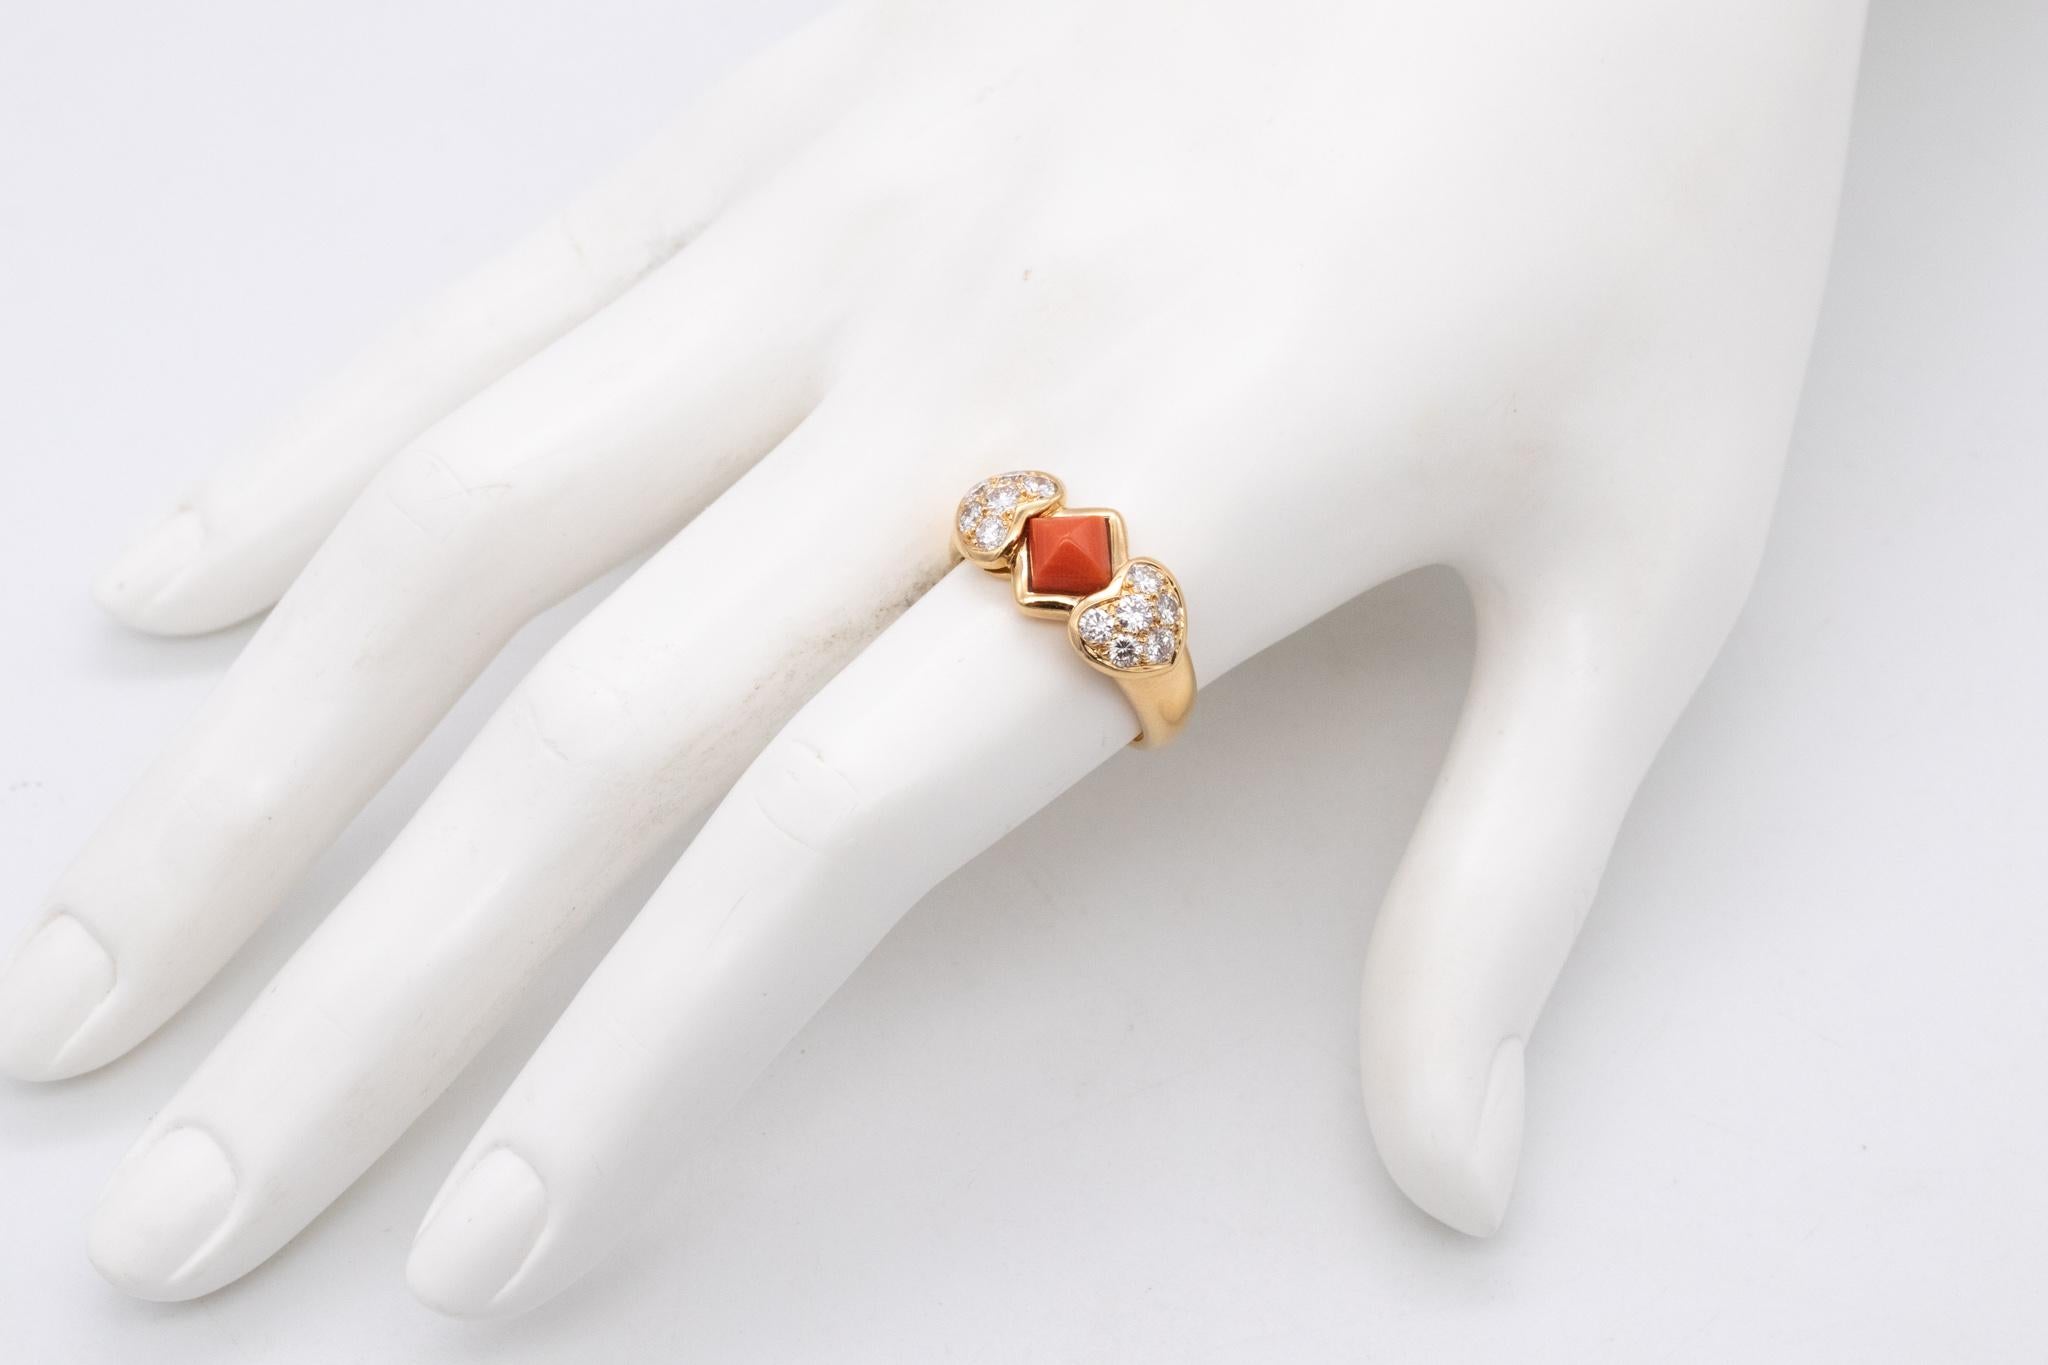 Ein von Christian Dior entworfener Ring.

Ein farbenfrohes Stück, gefertigt in Paris, Frankreich, aus massivem 18-karätigem, hochglanzpoliertem Gelbgold. Lünettenfassung oben, mit einem Cabochon im Zuckerhut-Schliff aus einer natürlichen